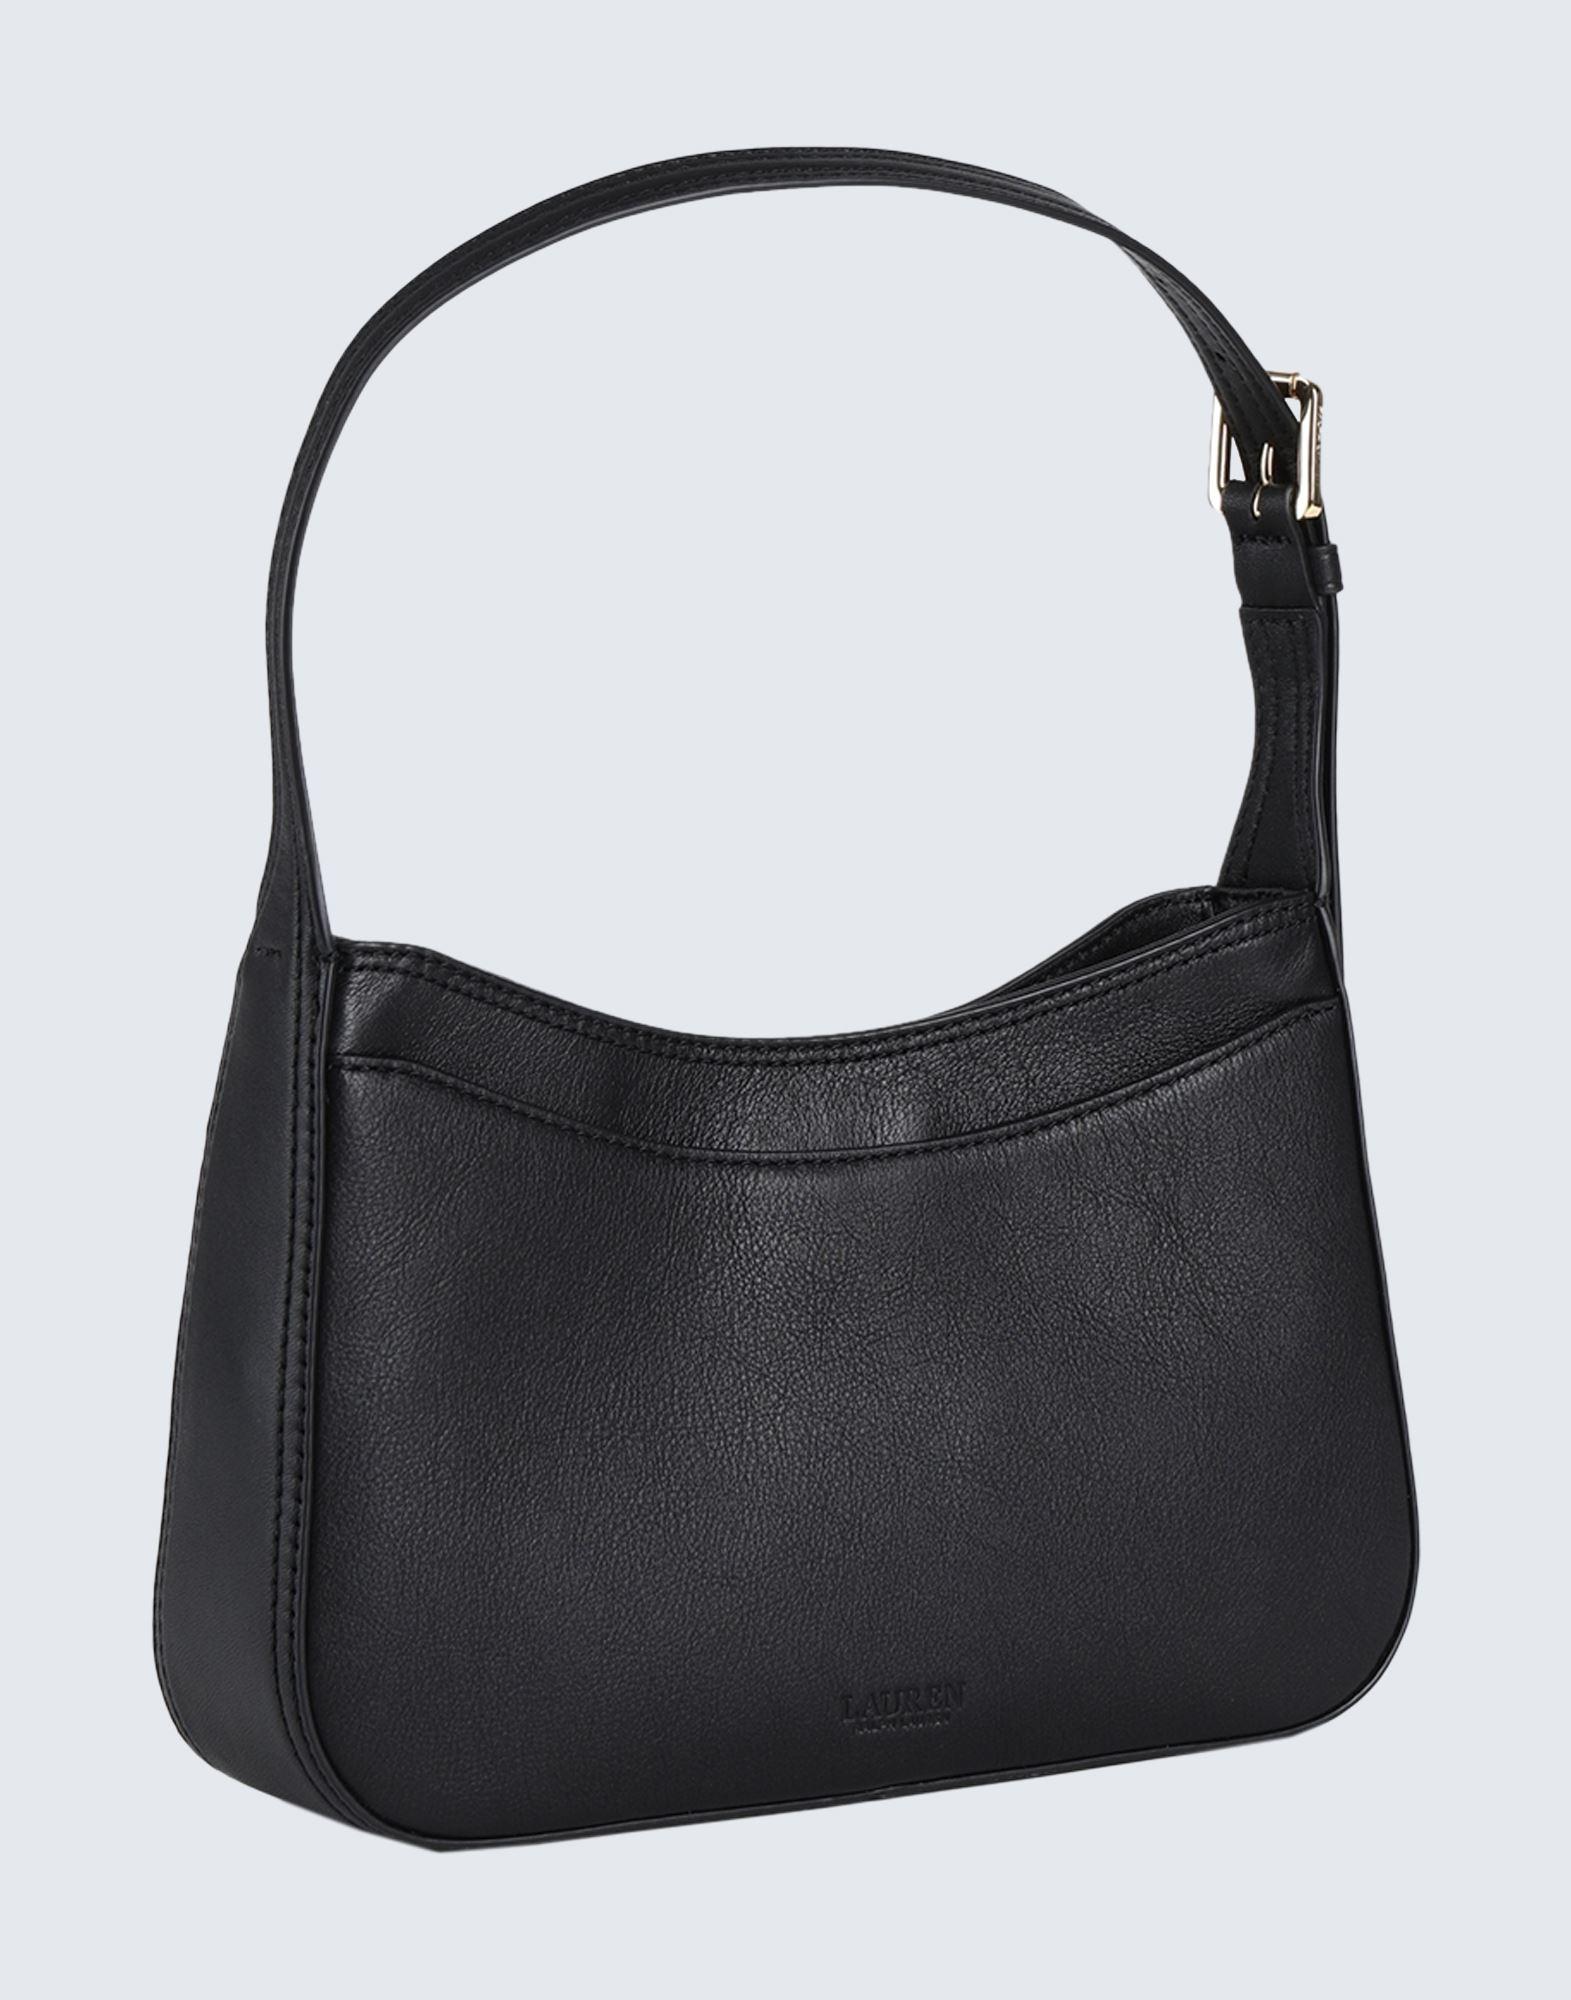 Lauren by Ralph Lauren Leather Handbag in Black | Lyst